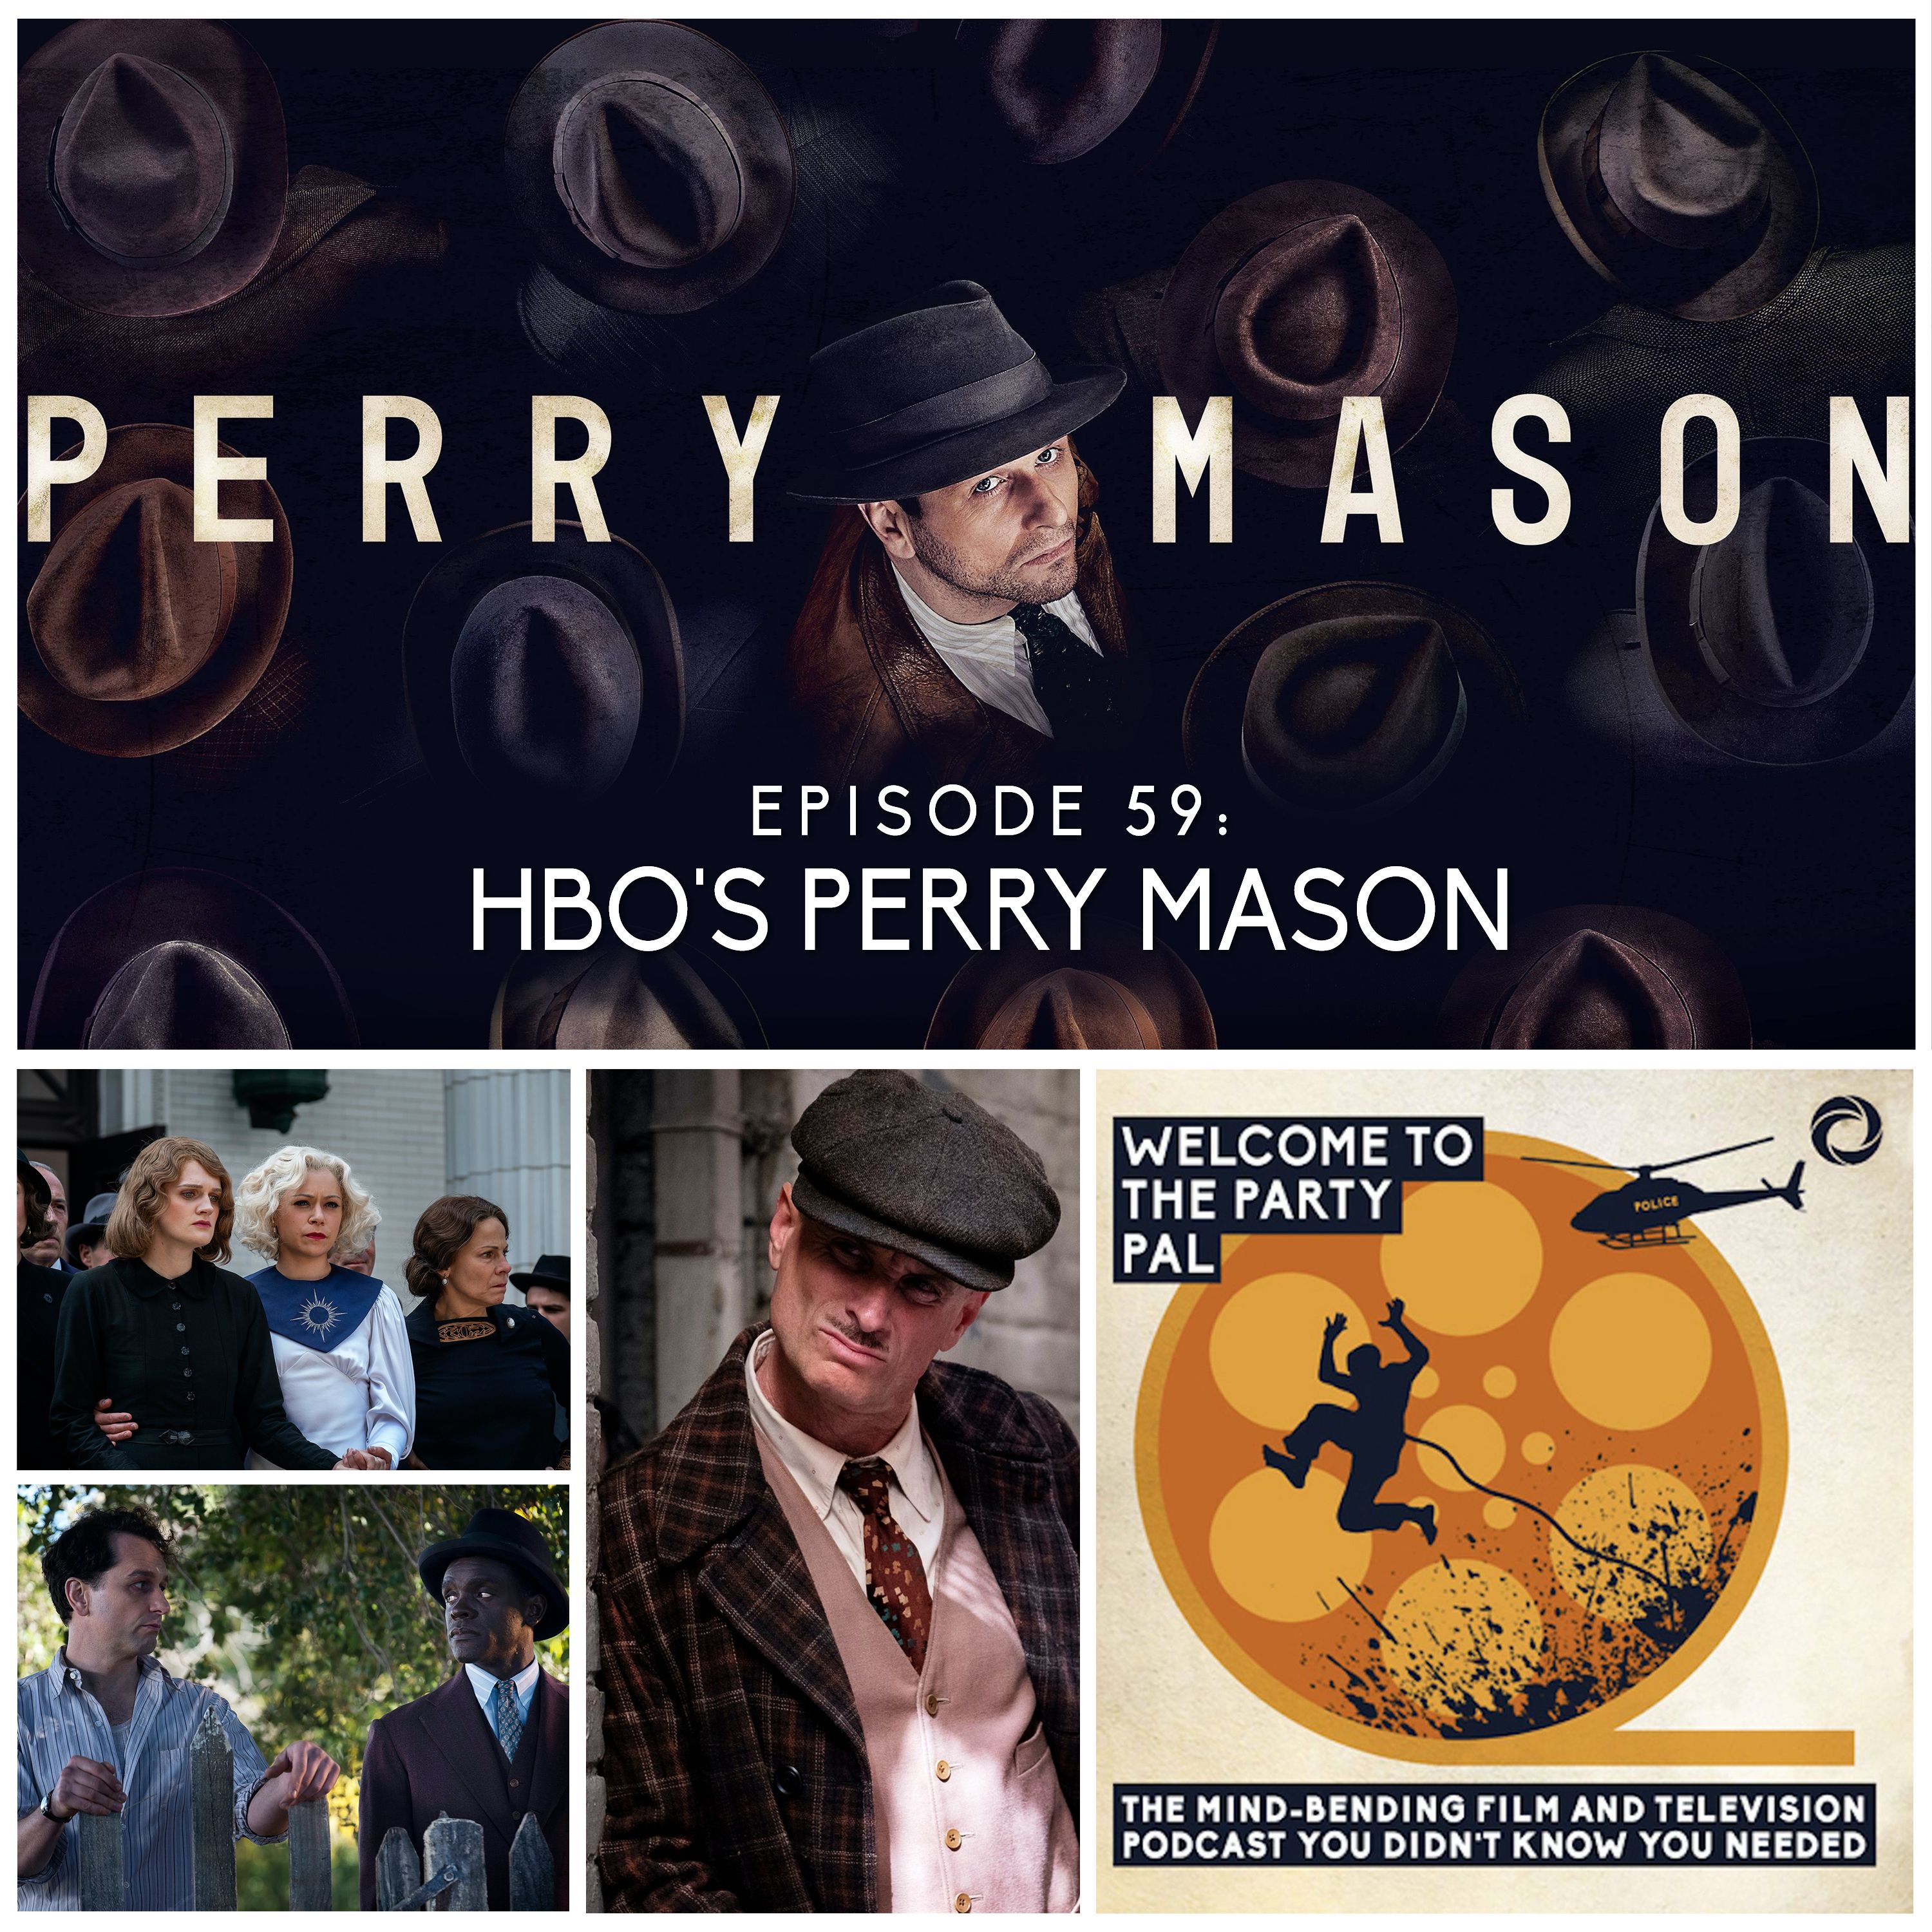 Episode 59: Perry Mason